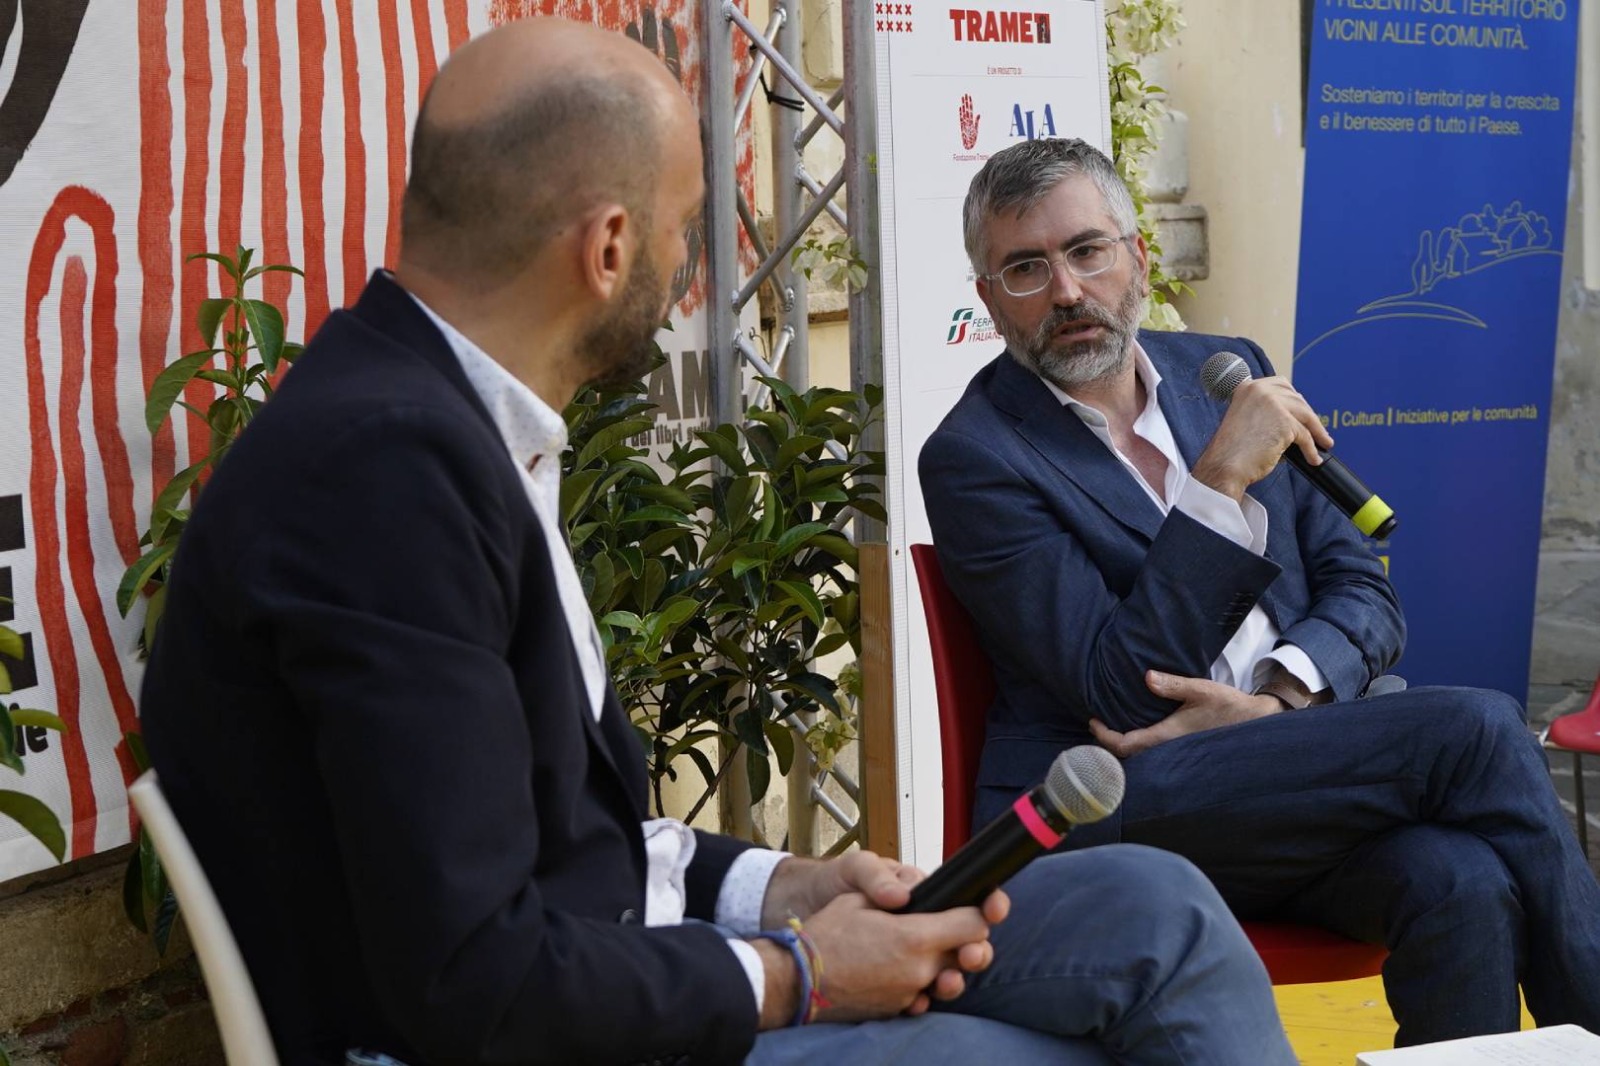 Trame Festival, Lombardo: «Le mafie vogliono influire sulla tenuta democratica del Paese»